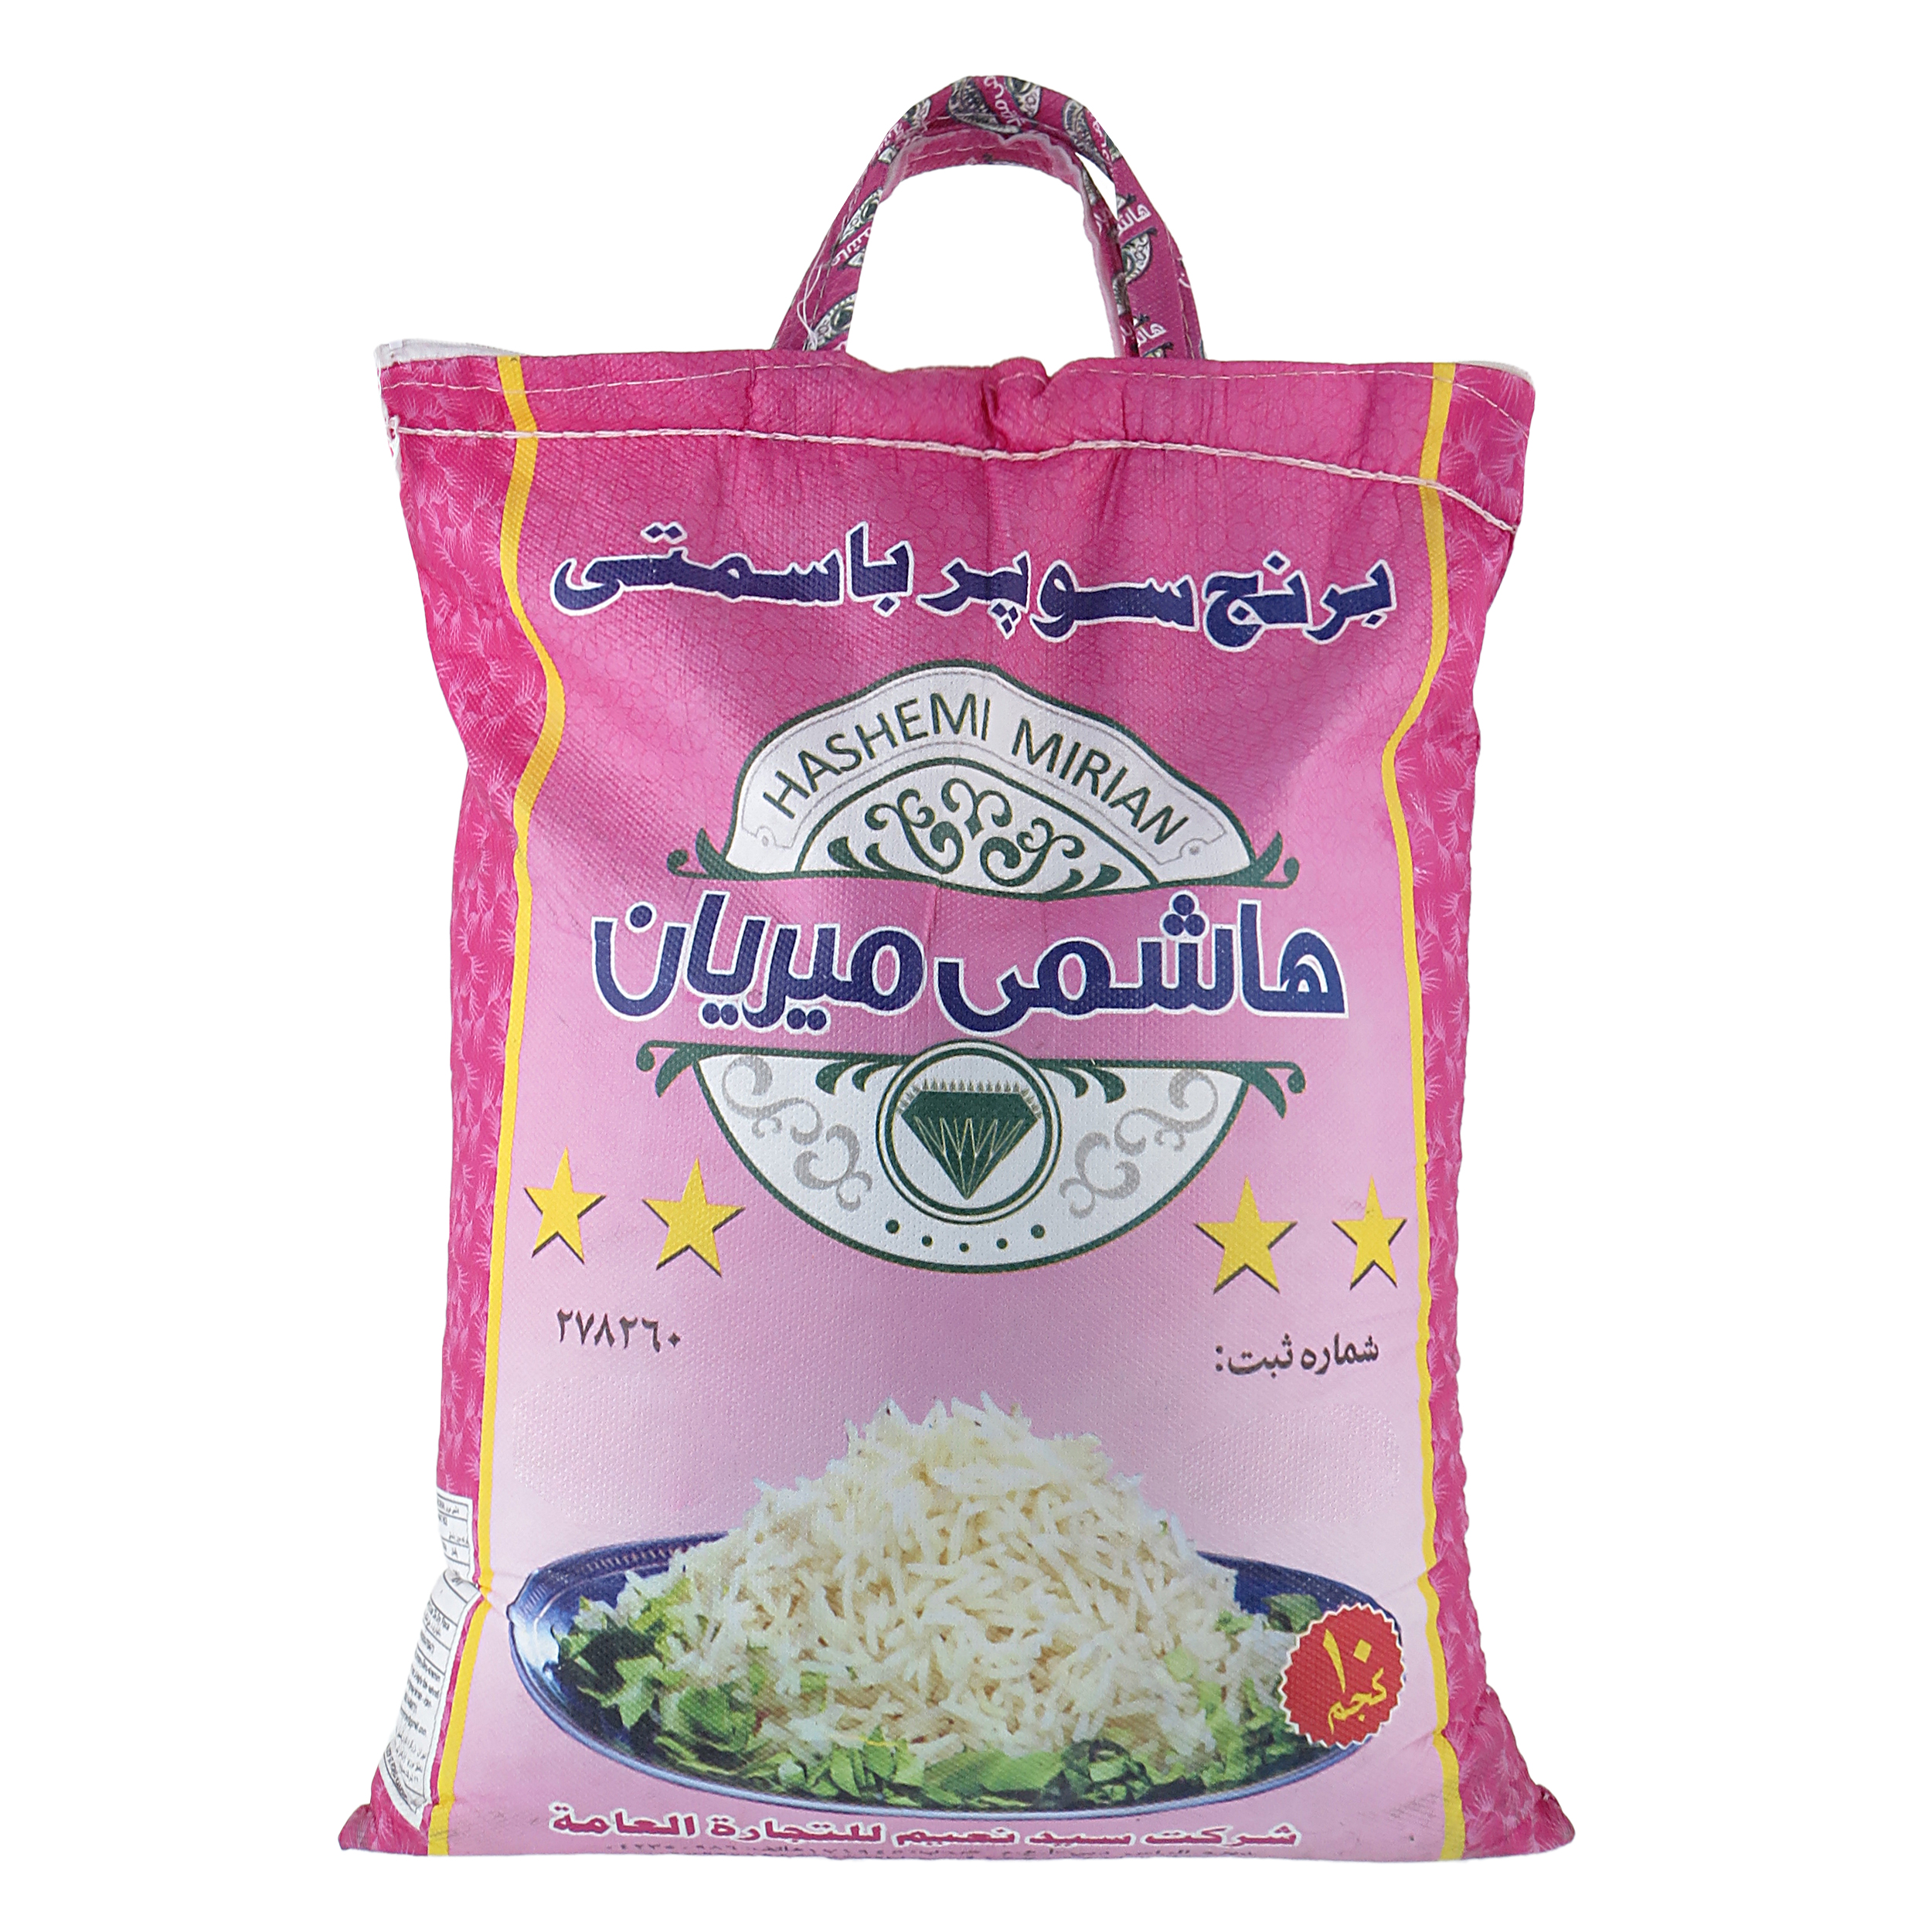 نکته خرید - قیمت روز برنج پاکستانی سوپر باسماتی هاشمی میریان - 10 کیلو گرم خرید